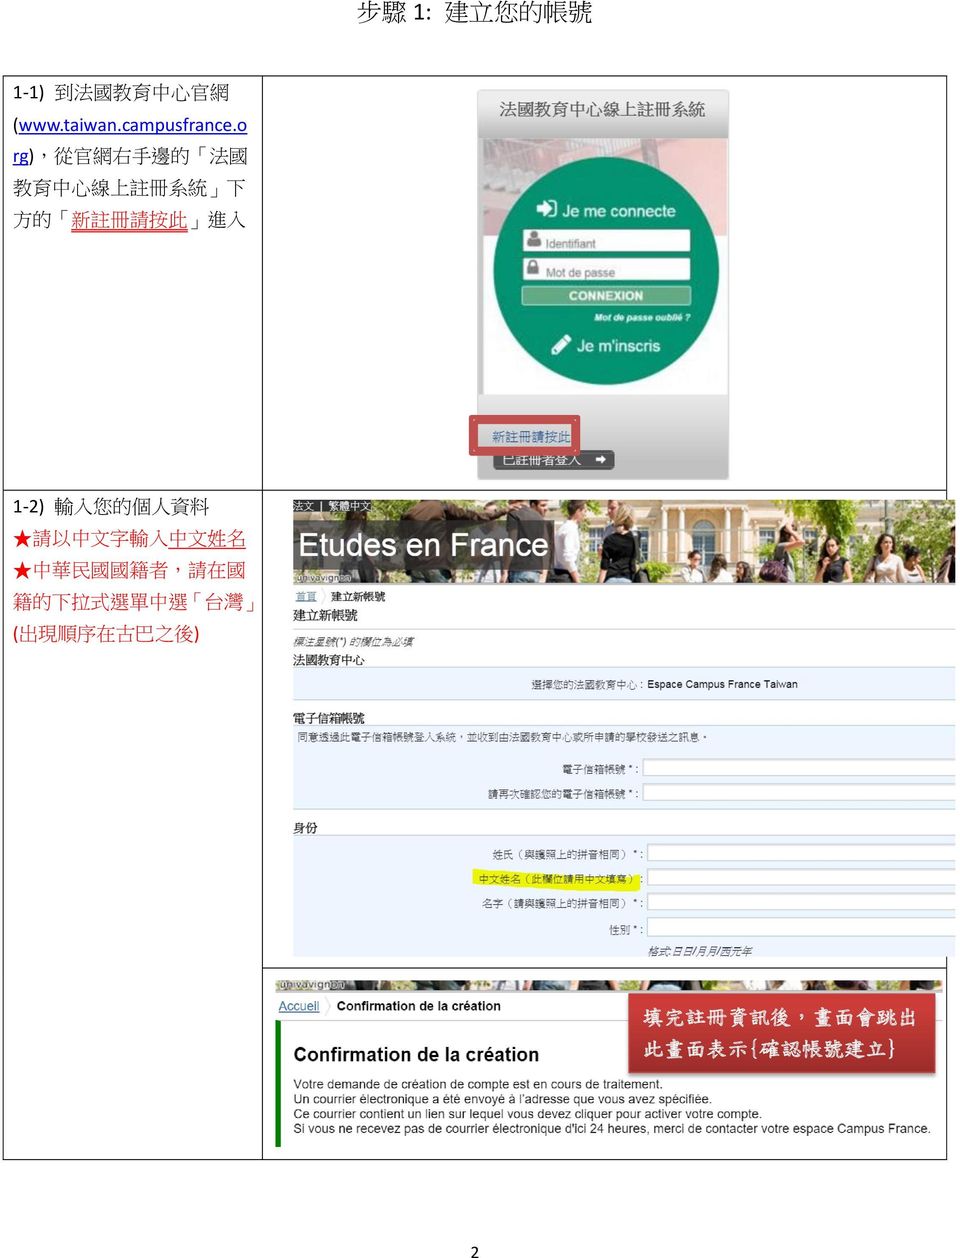 入 您 的 個 人 資 料 請 以 中 文 字 輸 入 中 文 姓 名 中 華 民 國 國 籍 者, 請 在 國 籍 的 下 拉 式 選 單 中